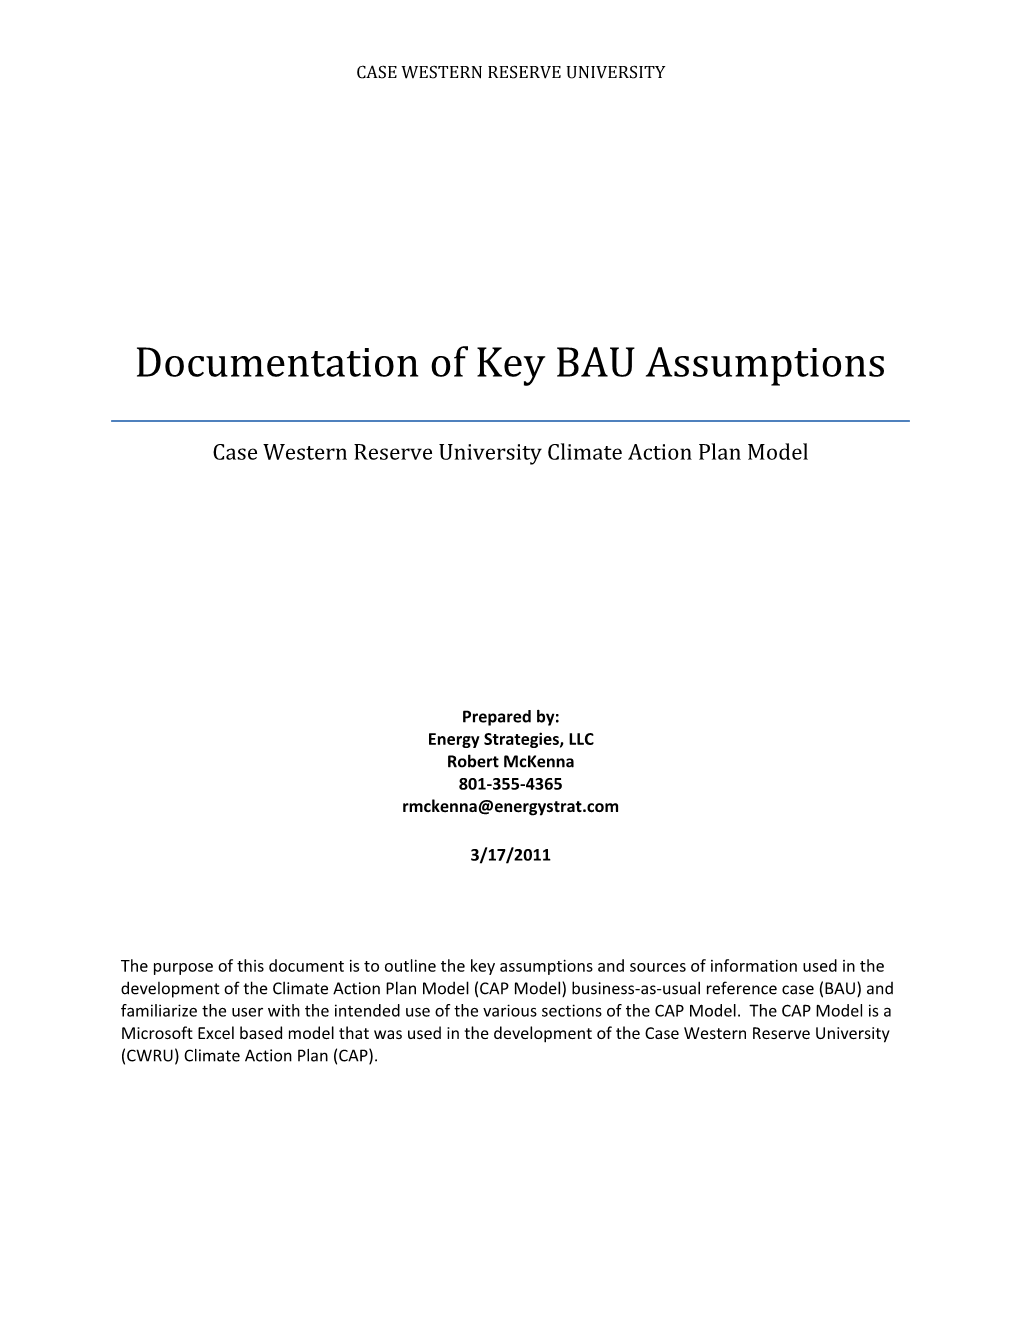 Documentation of Key BAU Assumptions